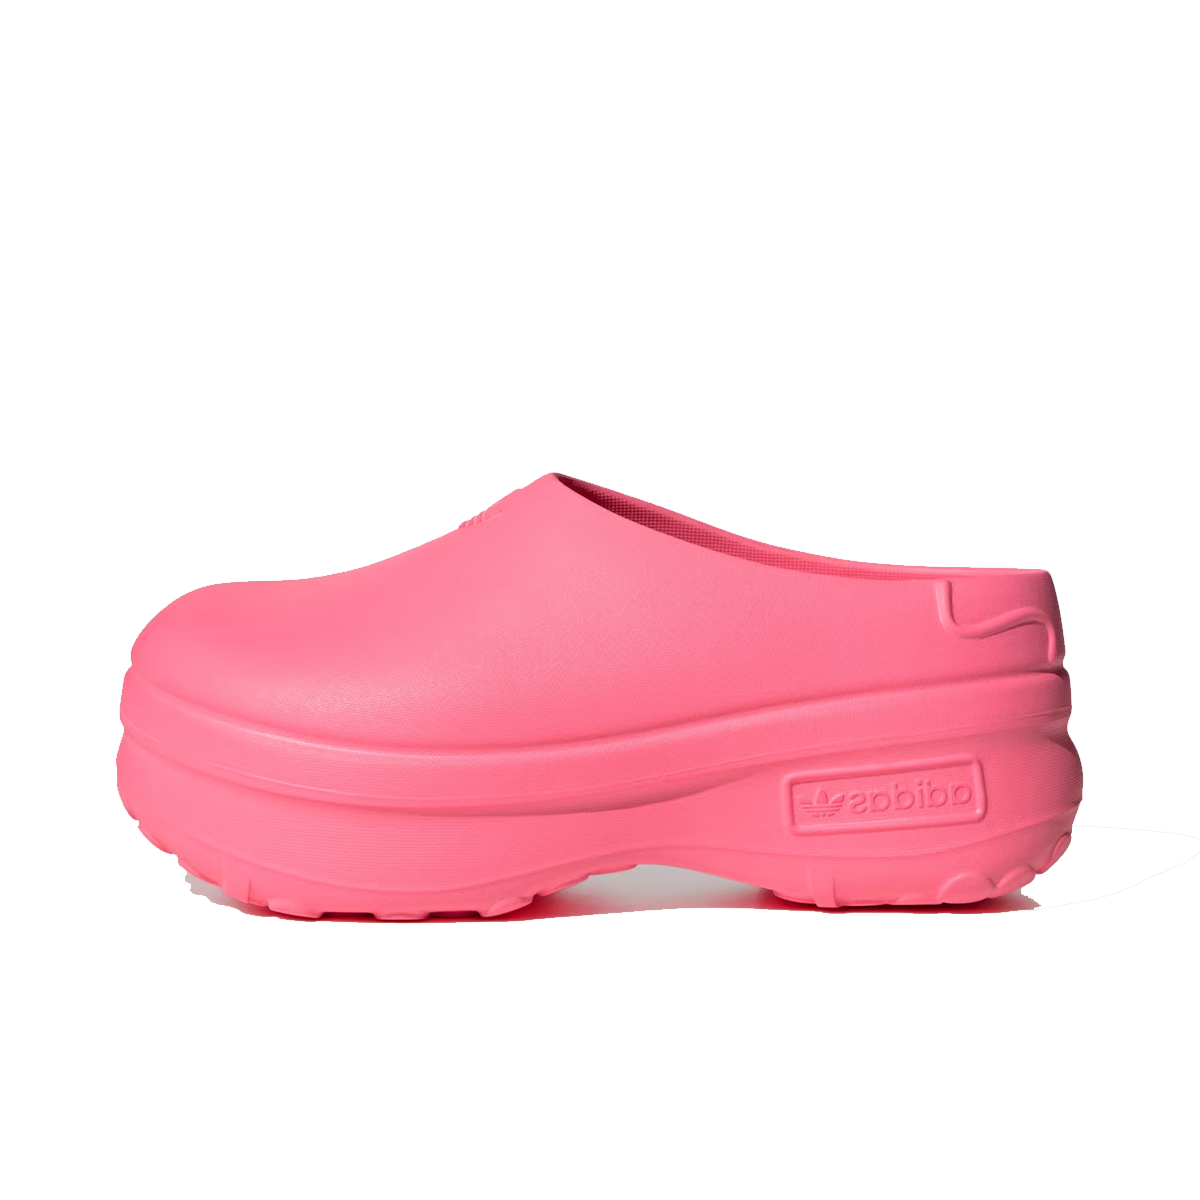 Stan Smith x adidas Adifom Mule WMNS 'Lucid Pink' ID9453